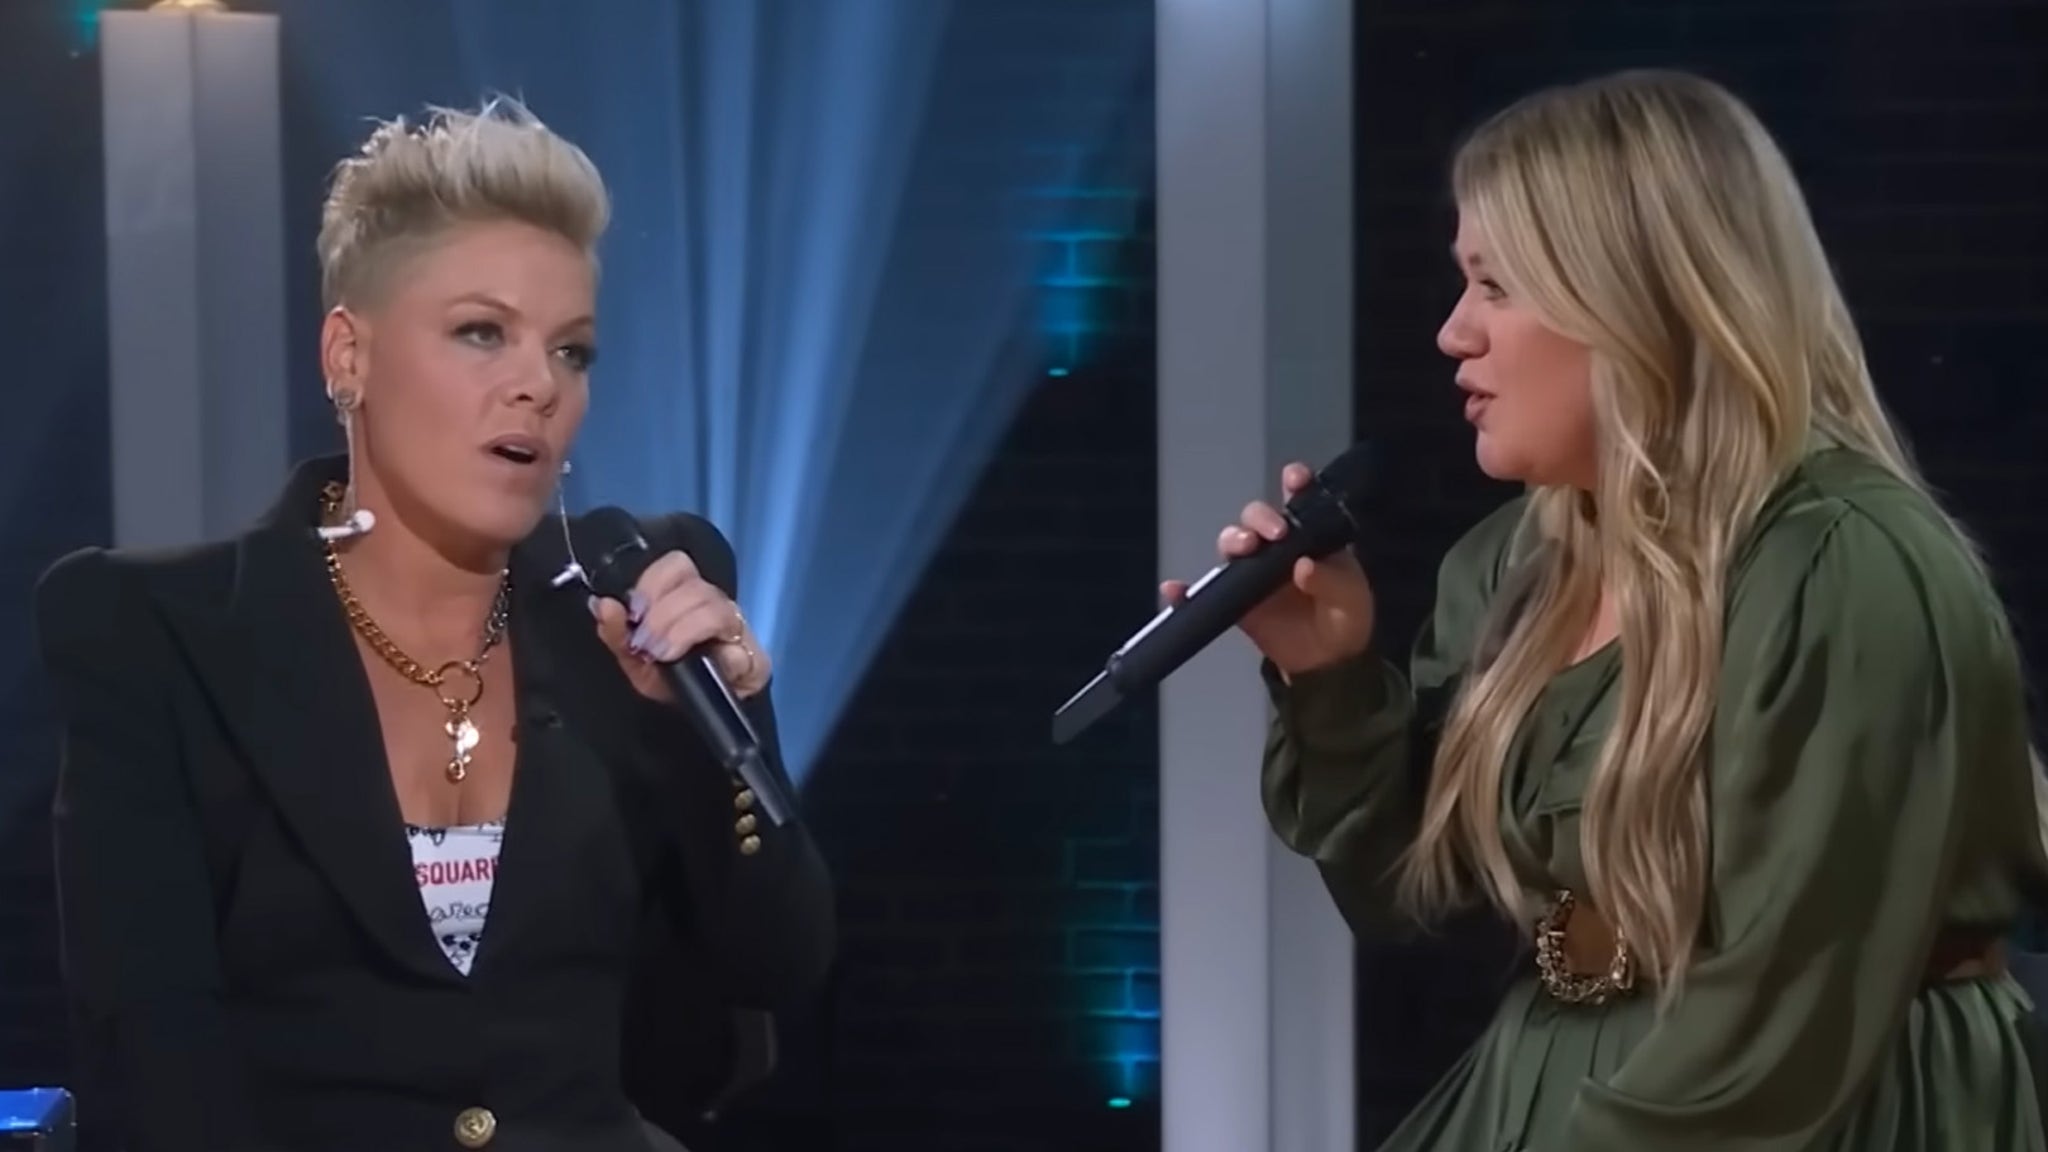 Regardez P!nk et Kelly Clarkson interpréter une paire de duos incroyables dans le talk-show de Kelly